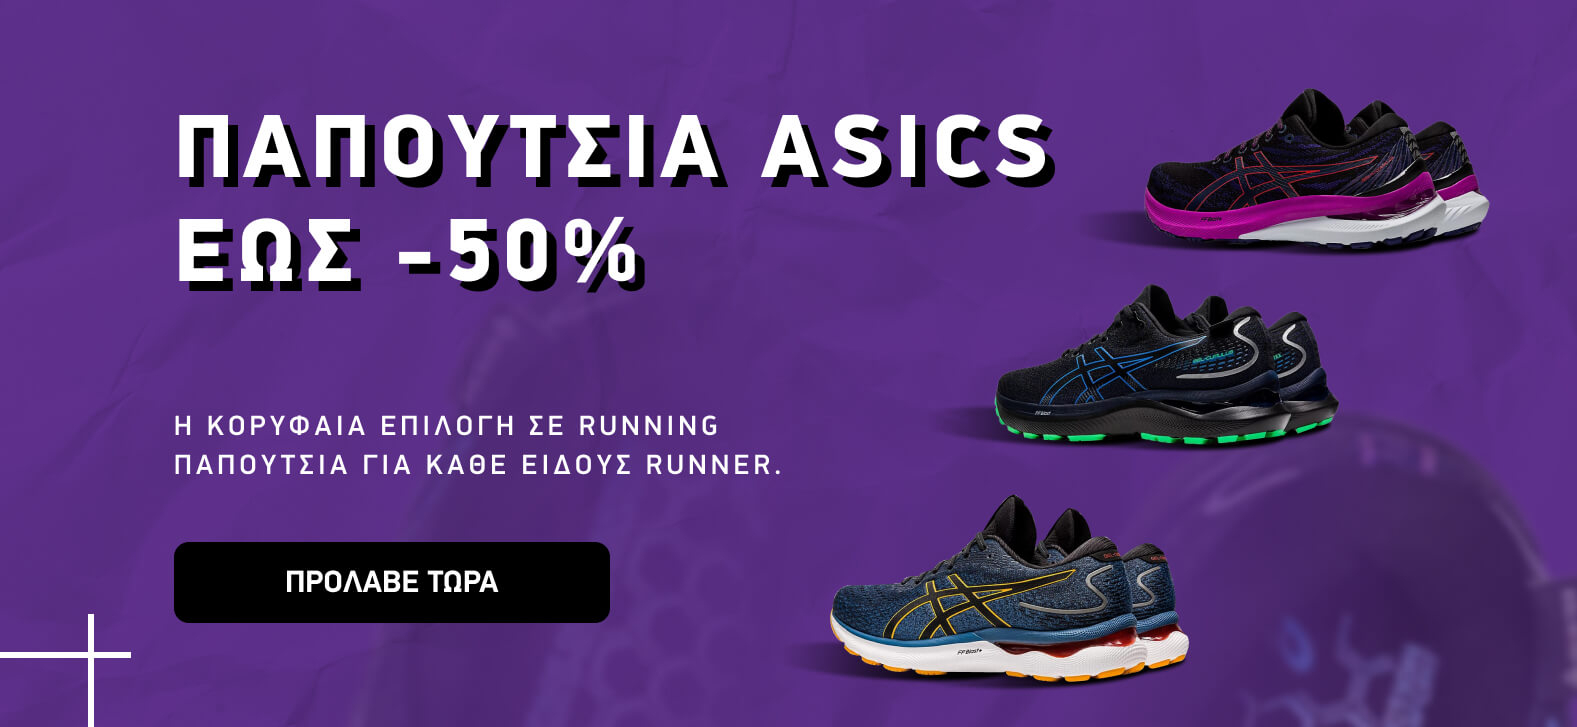 Παπούτσια Asics έως -50%